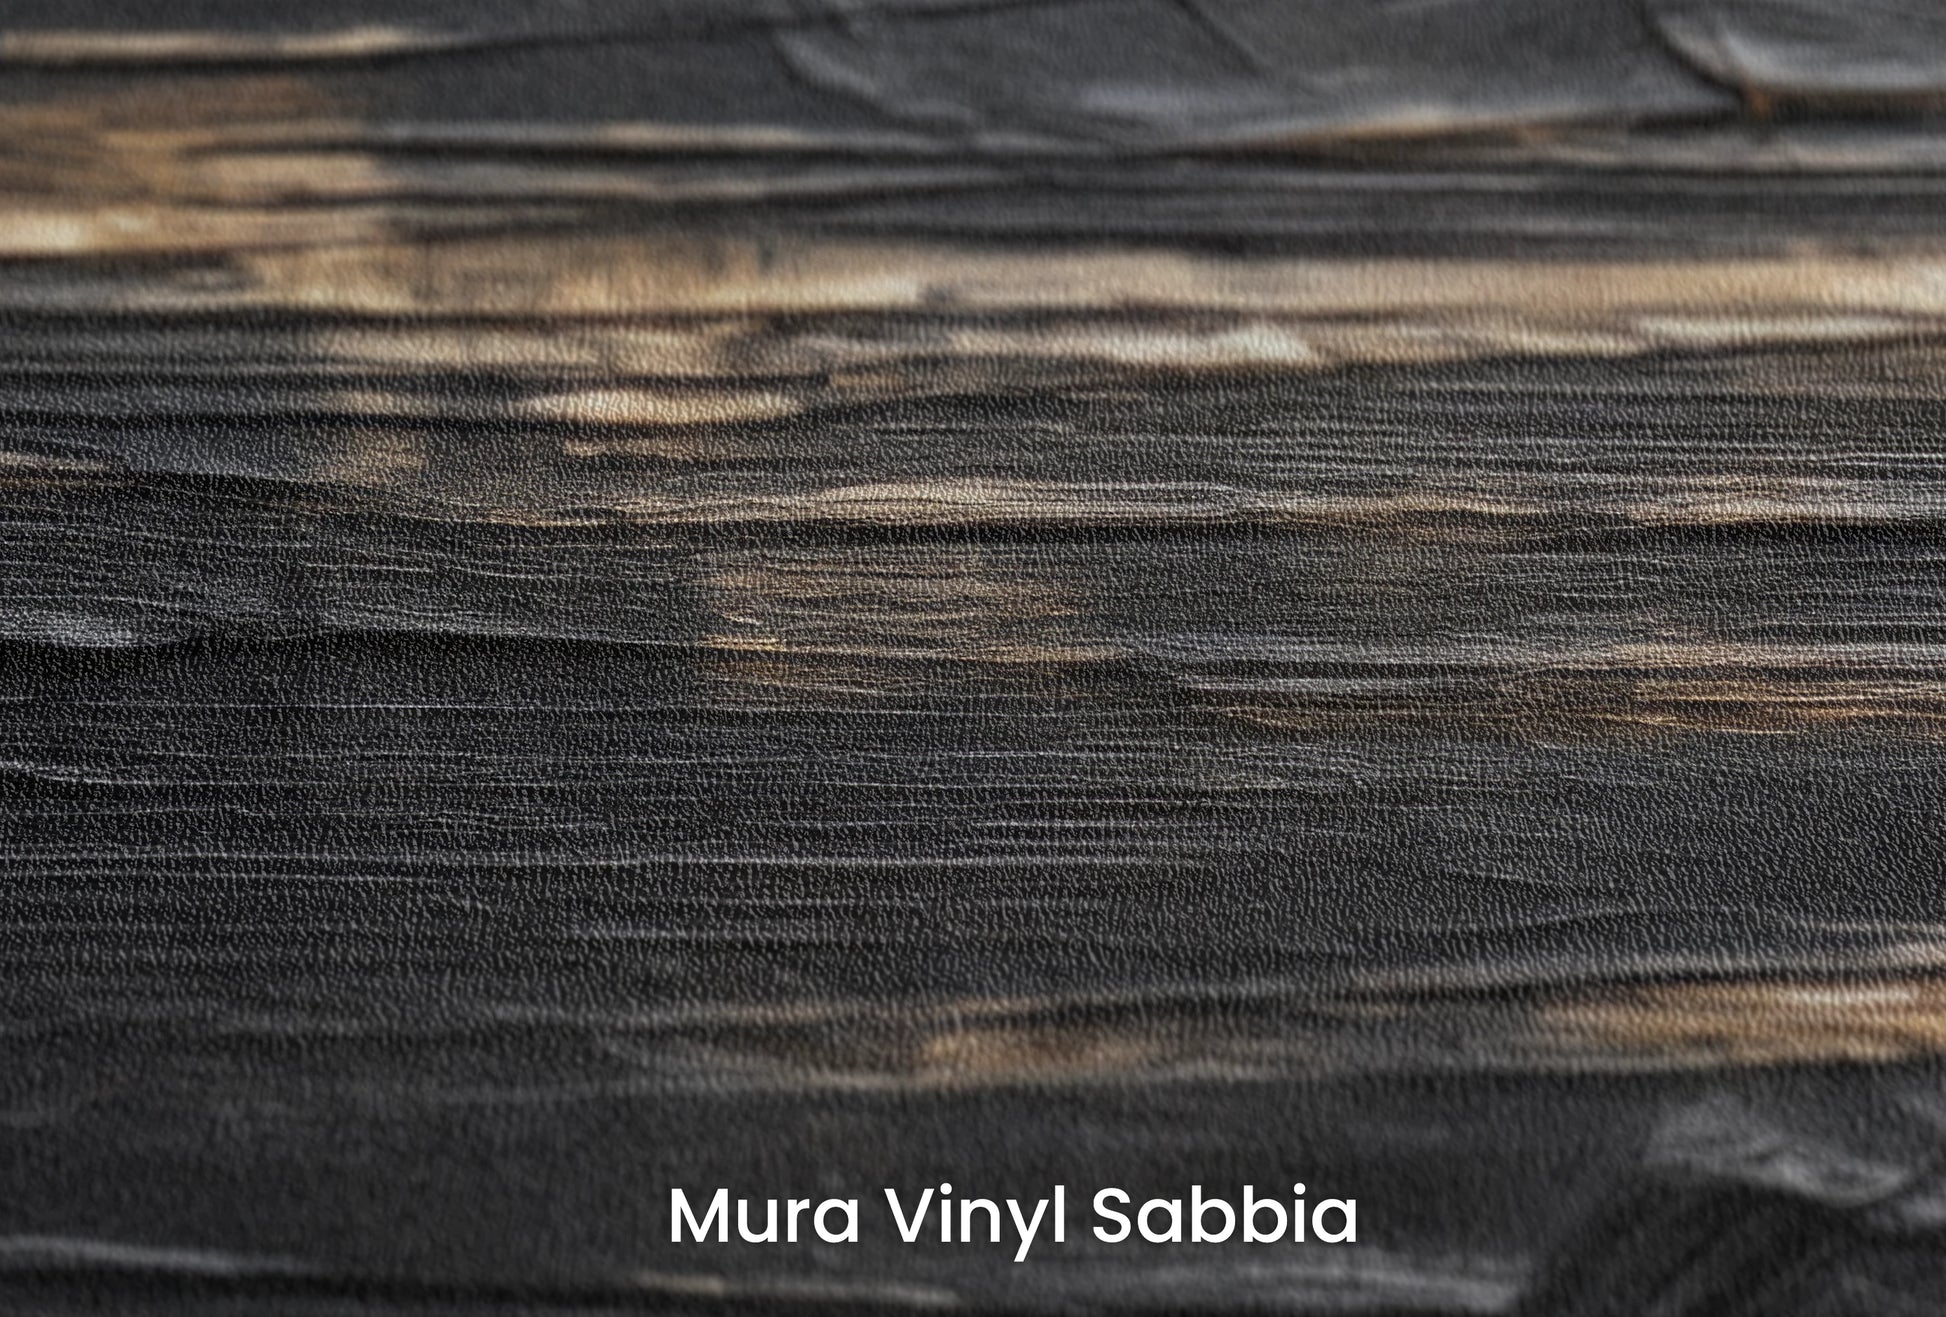 Zbliżenie na artystyczną fototapetę o nazwie Textured Depths na podłożu Mura Vinyl Sabbia struktura grubego ziarna piasku.